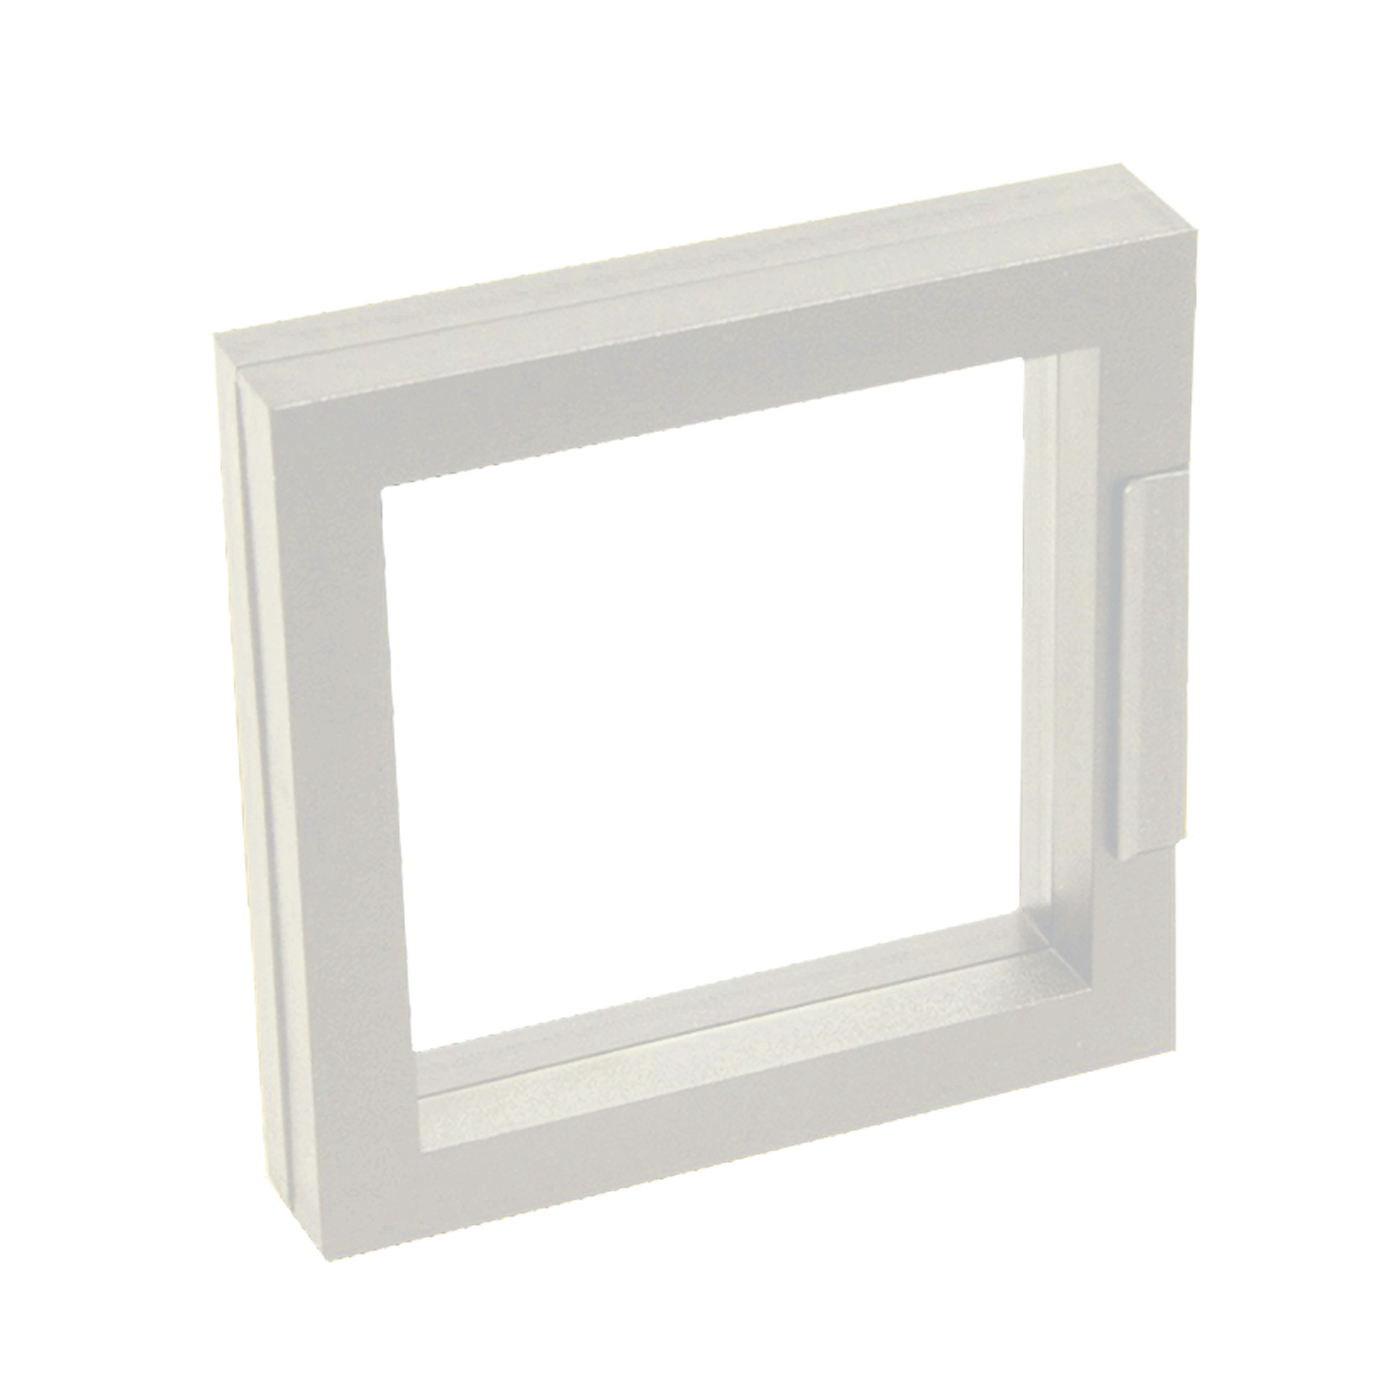 Schmucketui "Eco-Frame", weiß, 100 x 100 x 20 mm - 1 Stück